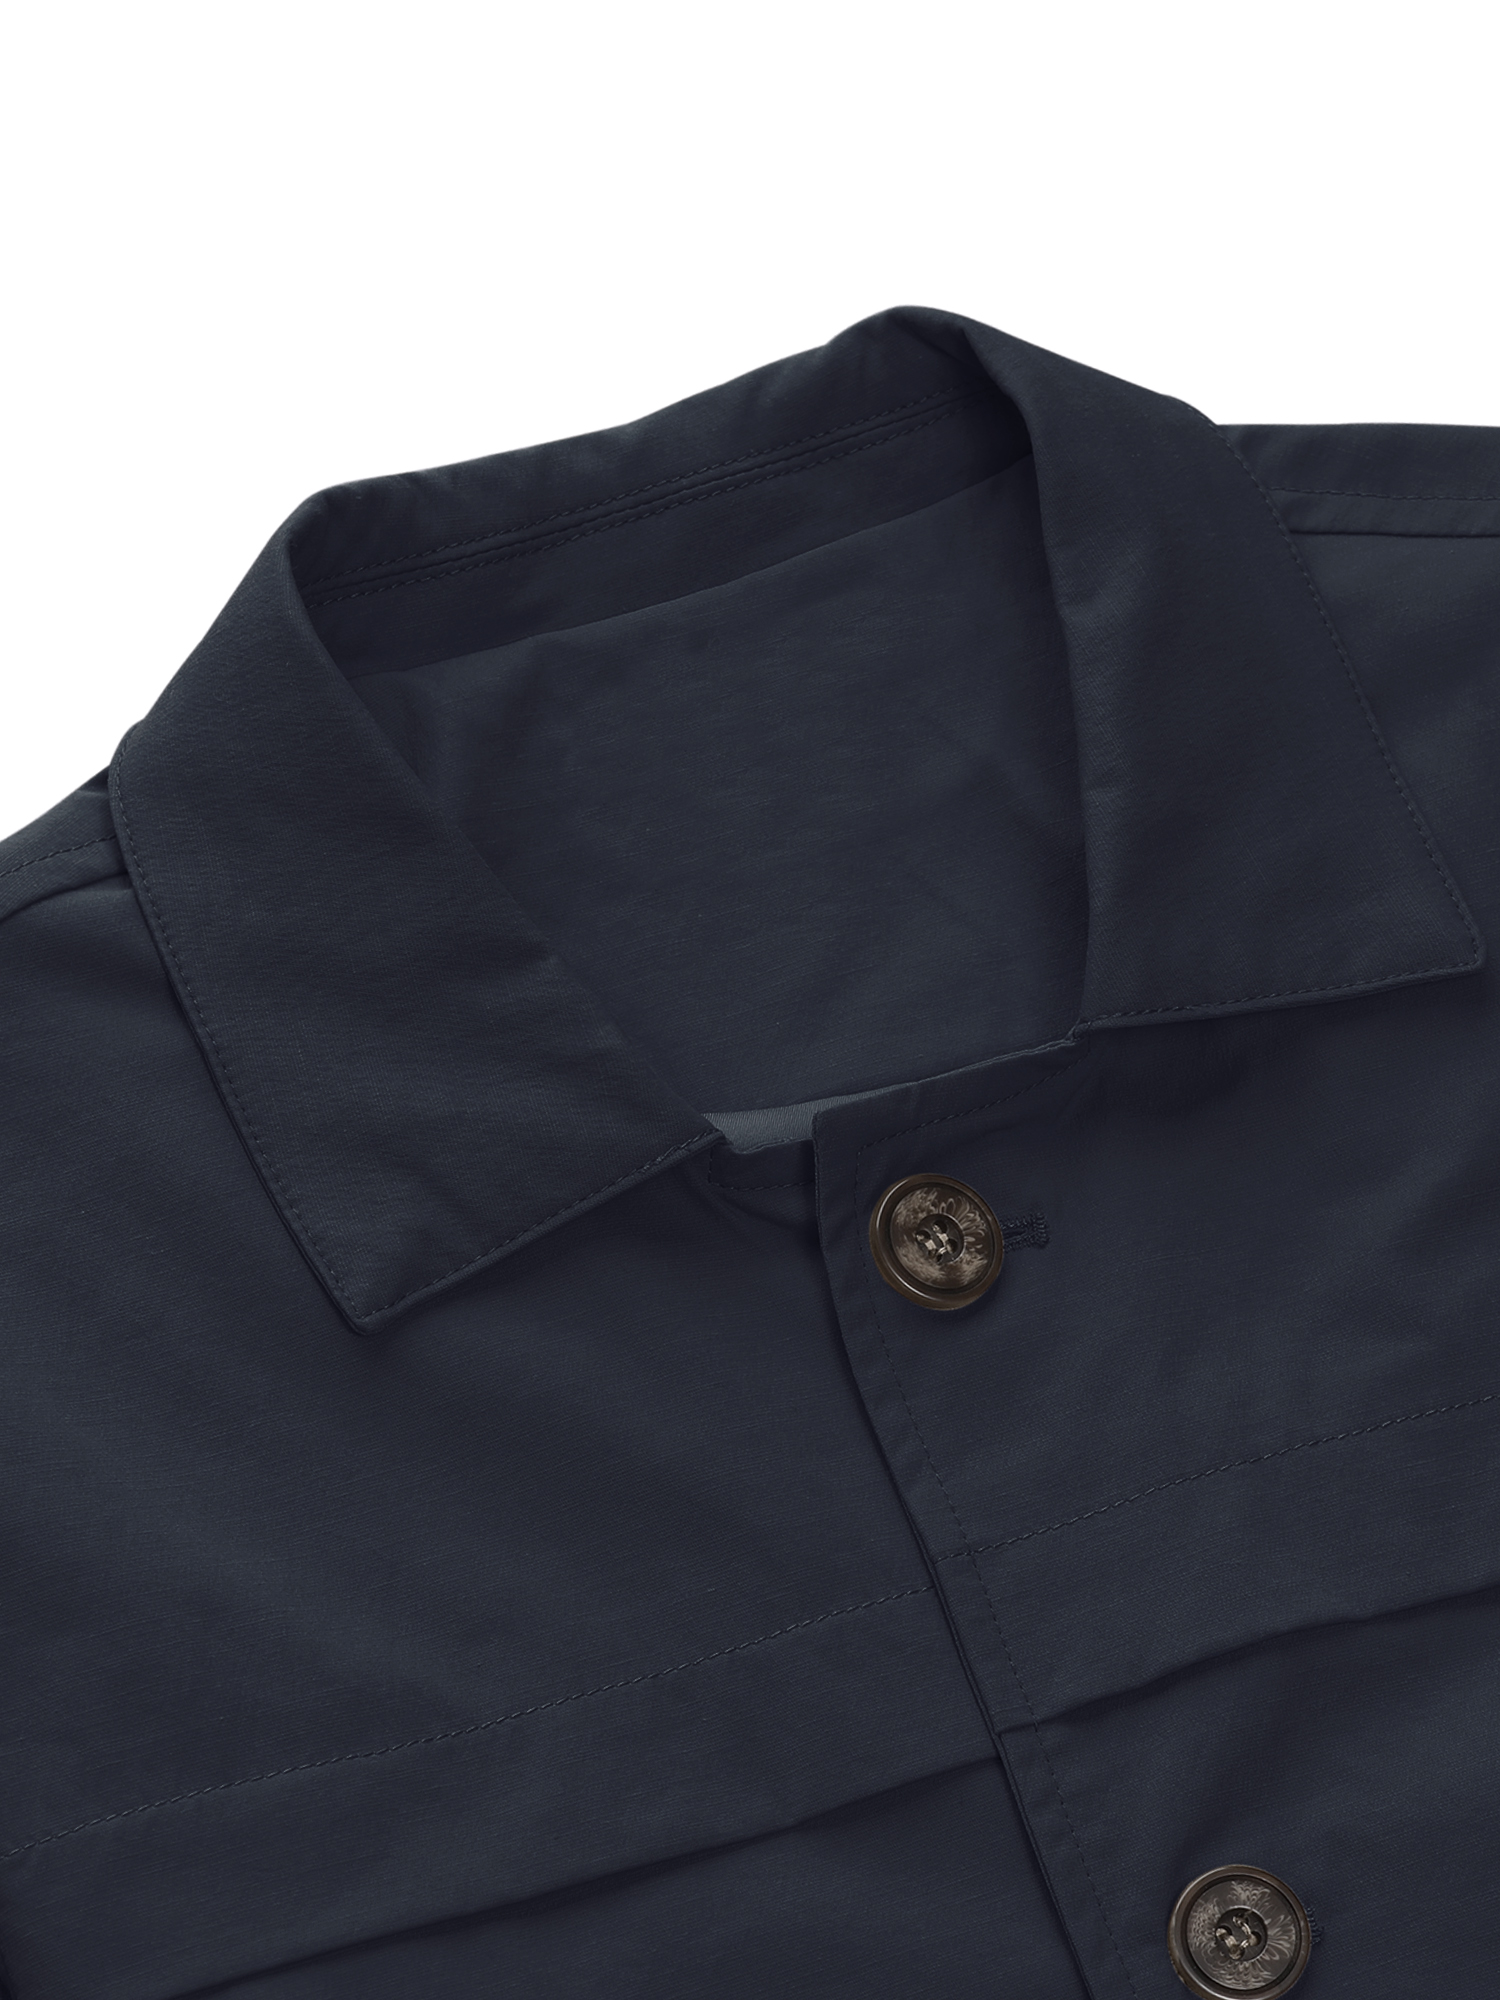 MODA NOVA Big & Tall Men's Trench Coat Single Breasted Jacket Overcoat Navy Blue XLT - image 5 of 6